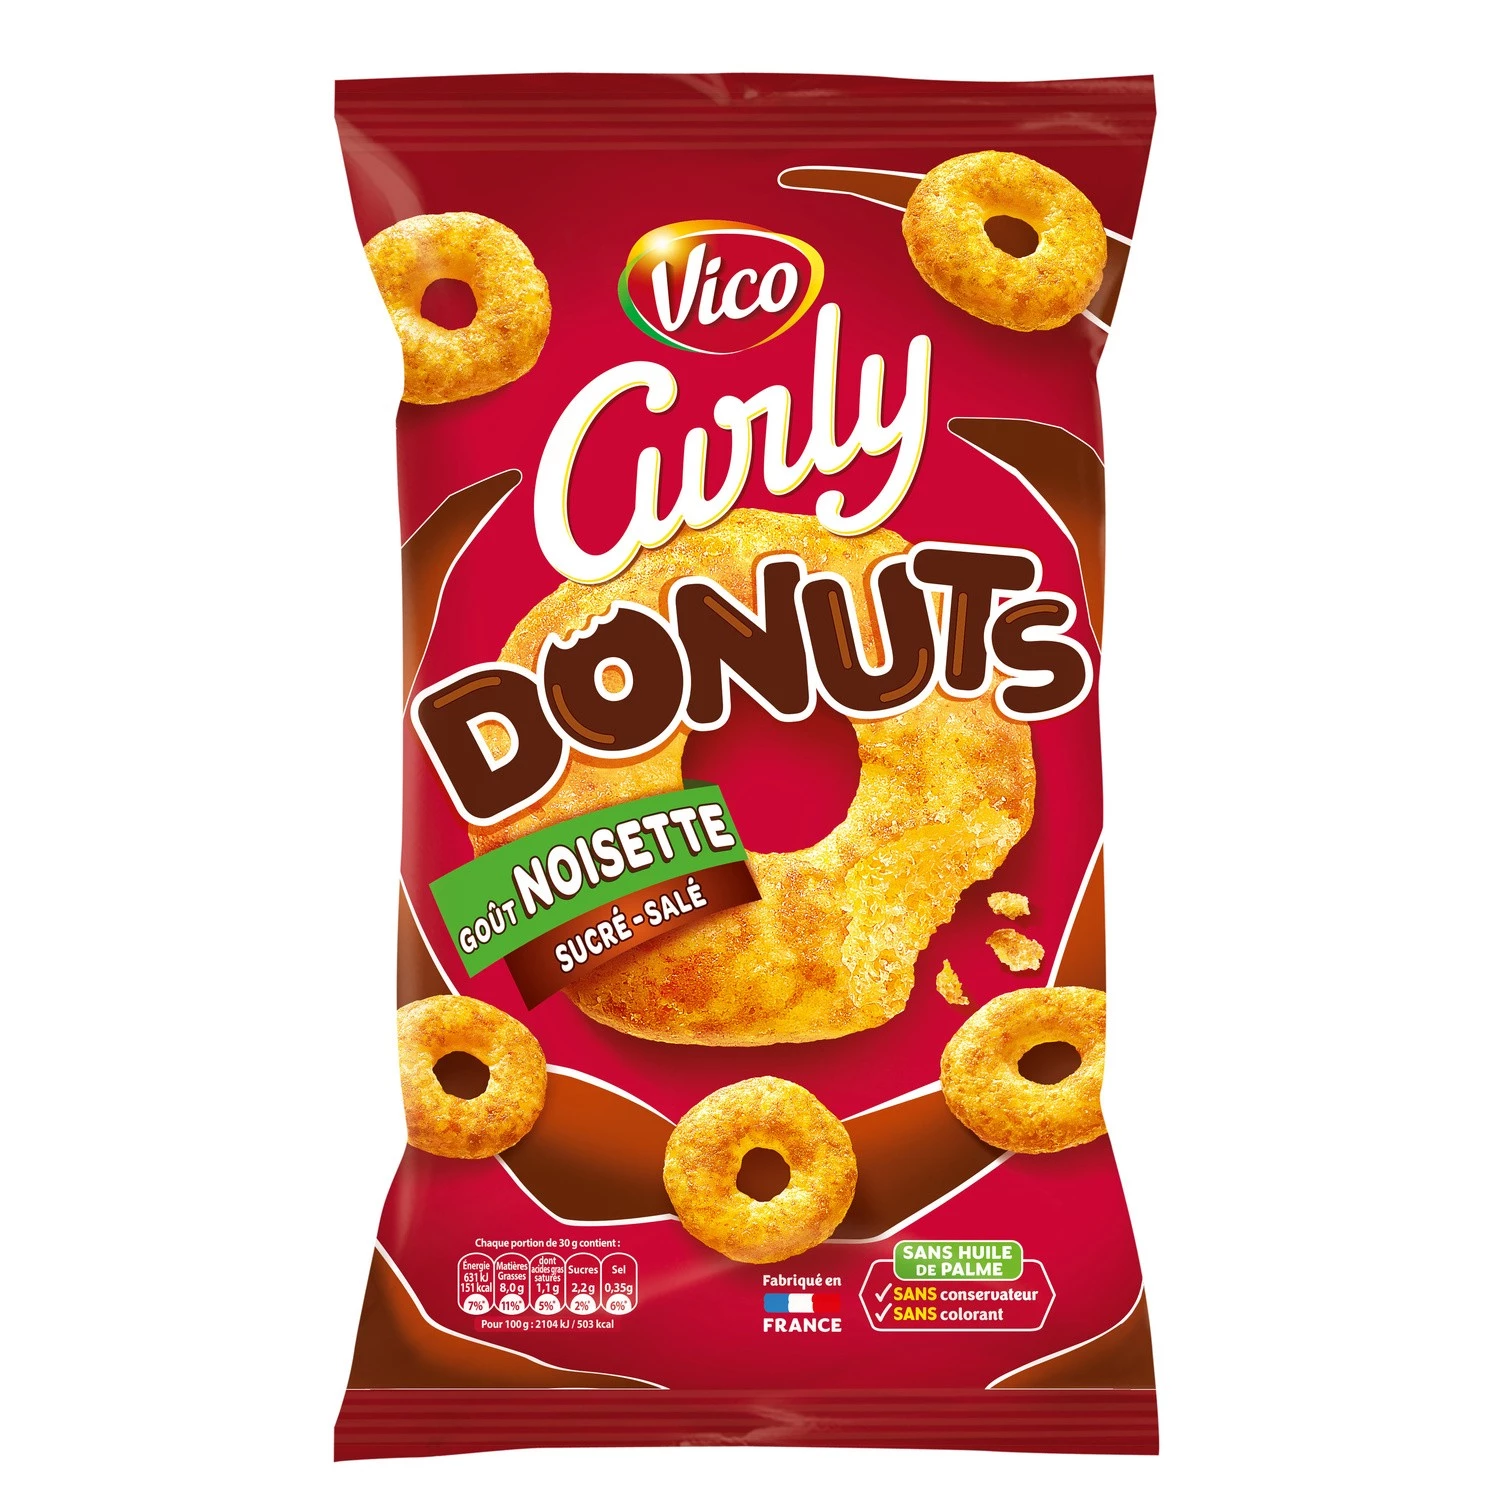 Zoet-zoute hazelnoot-donutchips, 100 g - CURLY